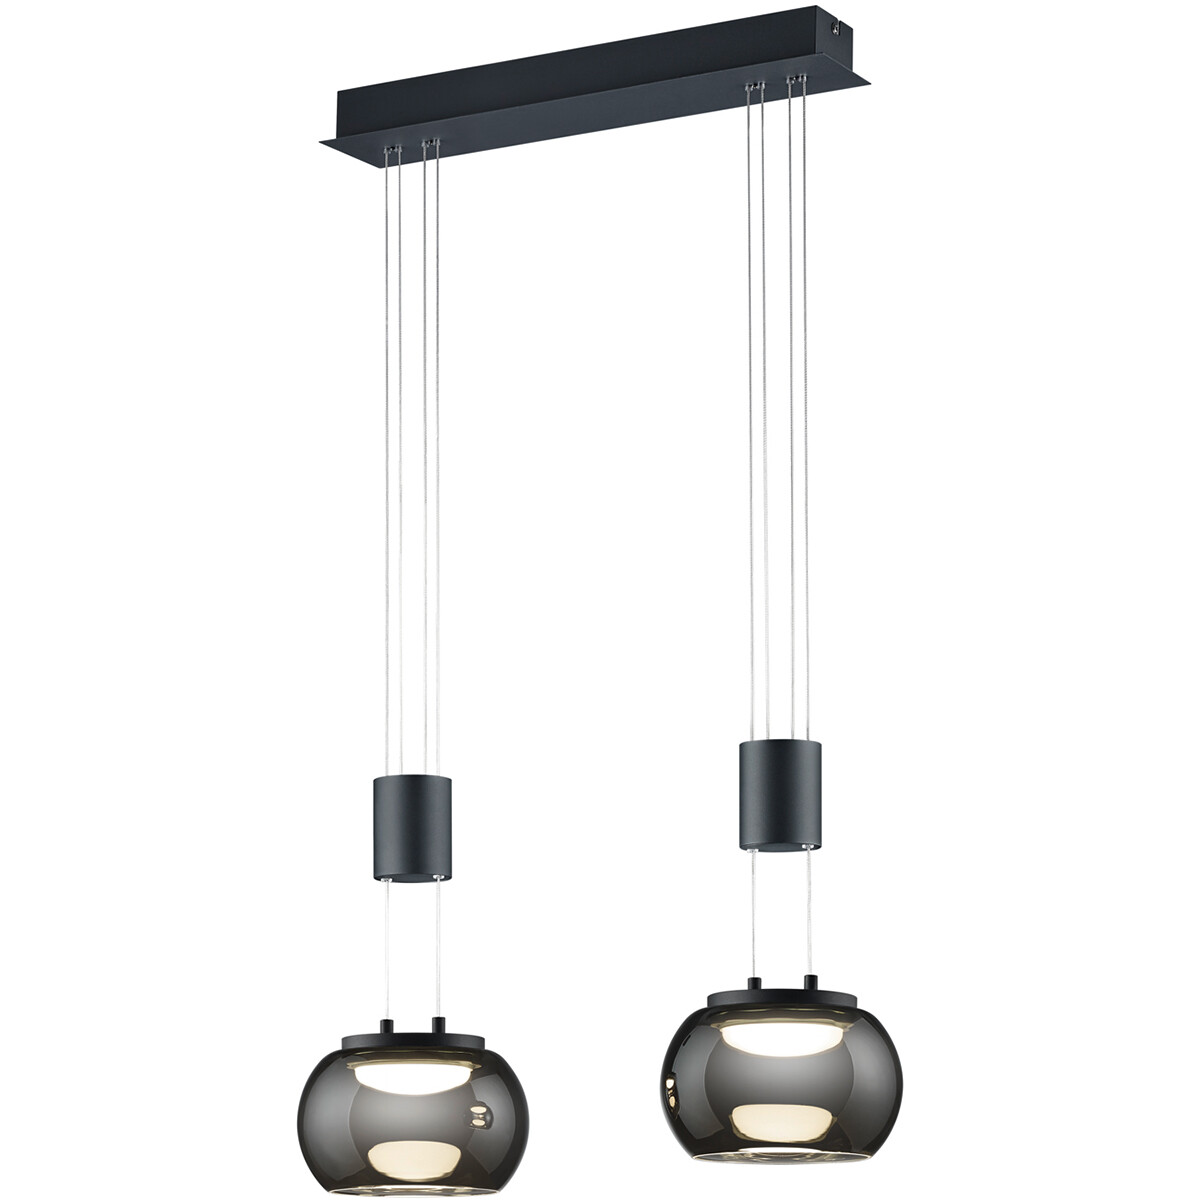 LED Hanglamp Hangverlichting Trion Maliba 16W 2-lichts Warm Wit 3000K Dimbaar Rechthoek Mat Zwart Al